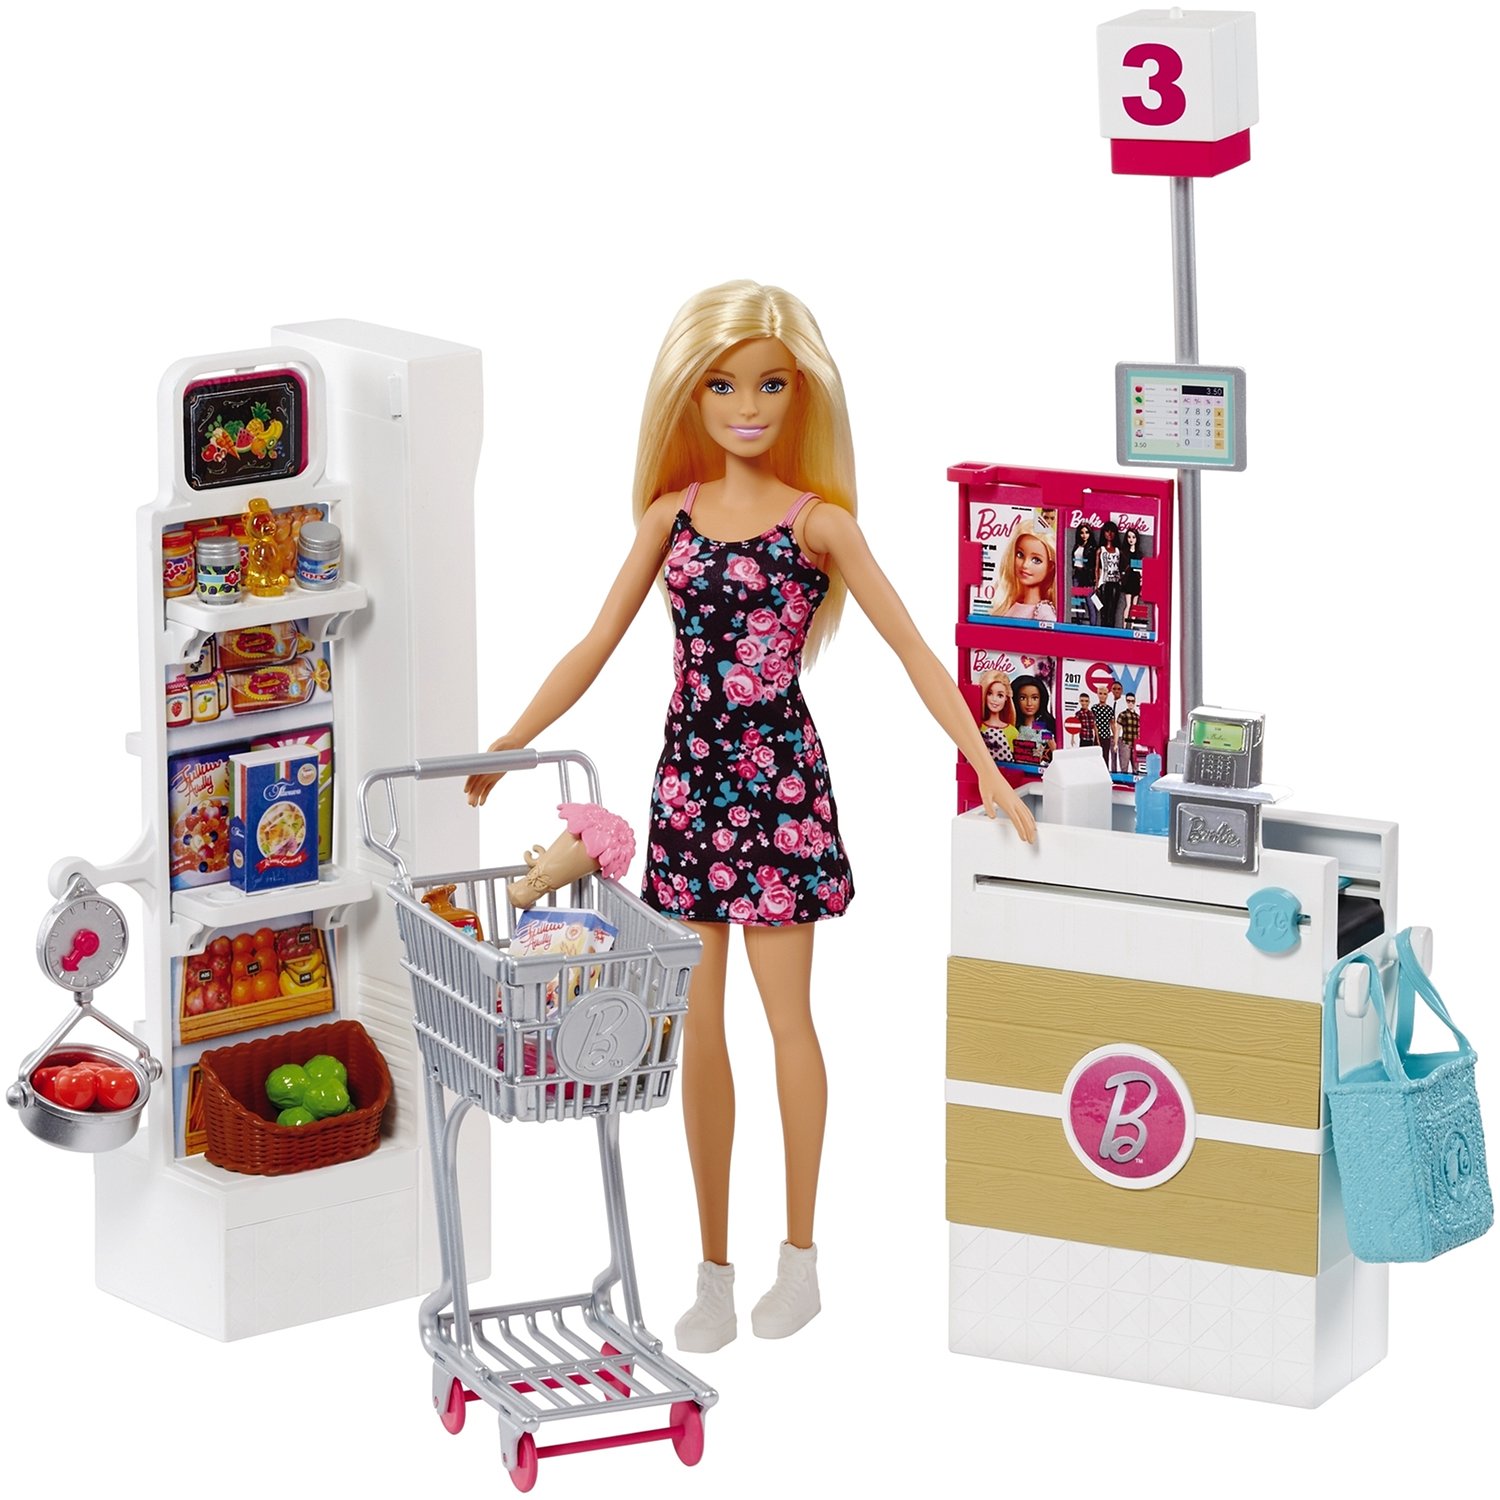 Дом Мечты Барби Купить В Интернет Магазине